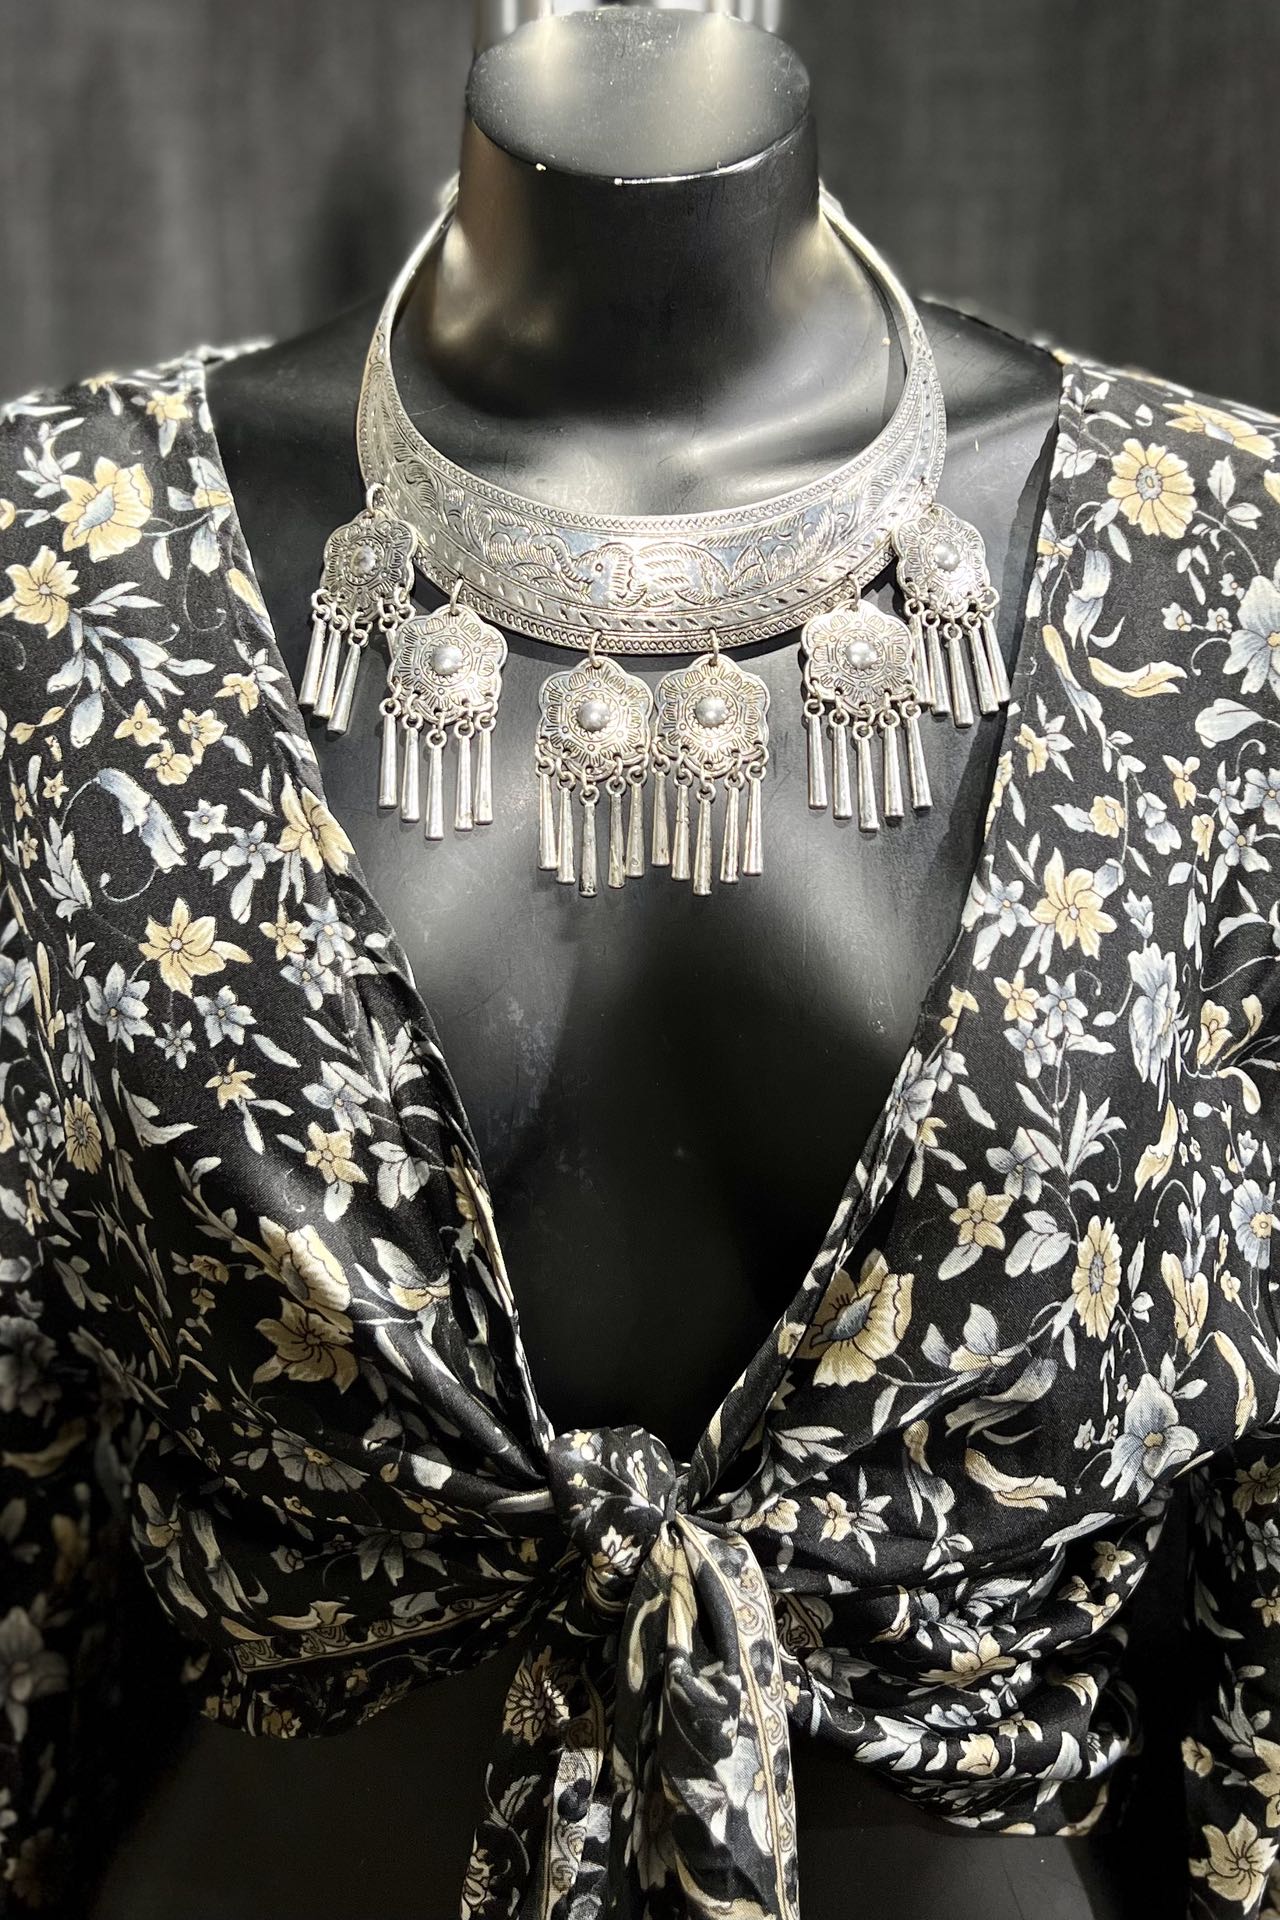 Monet Necklace & Earrings